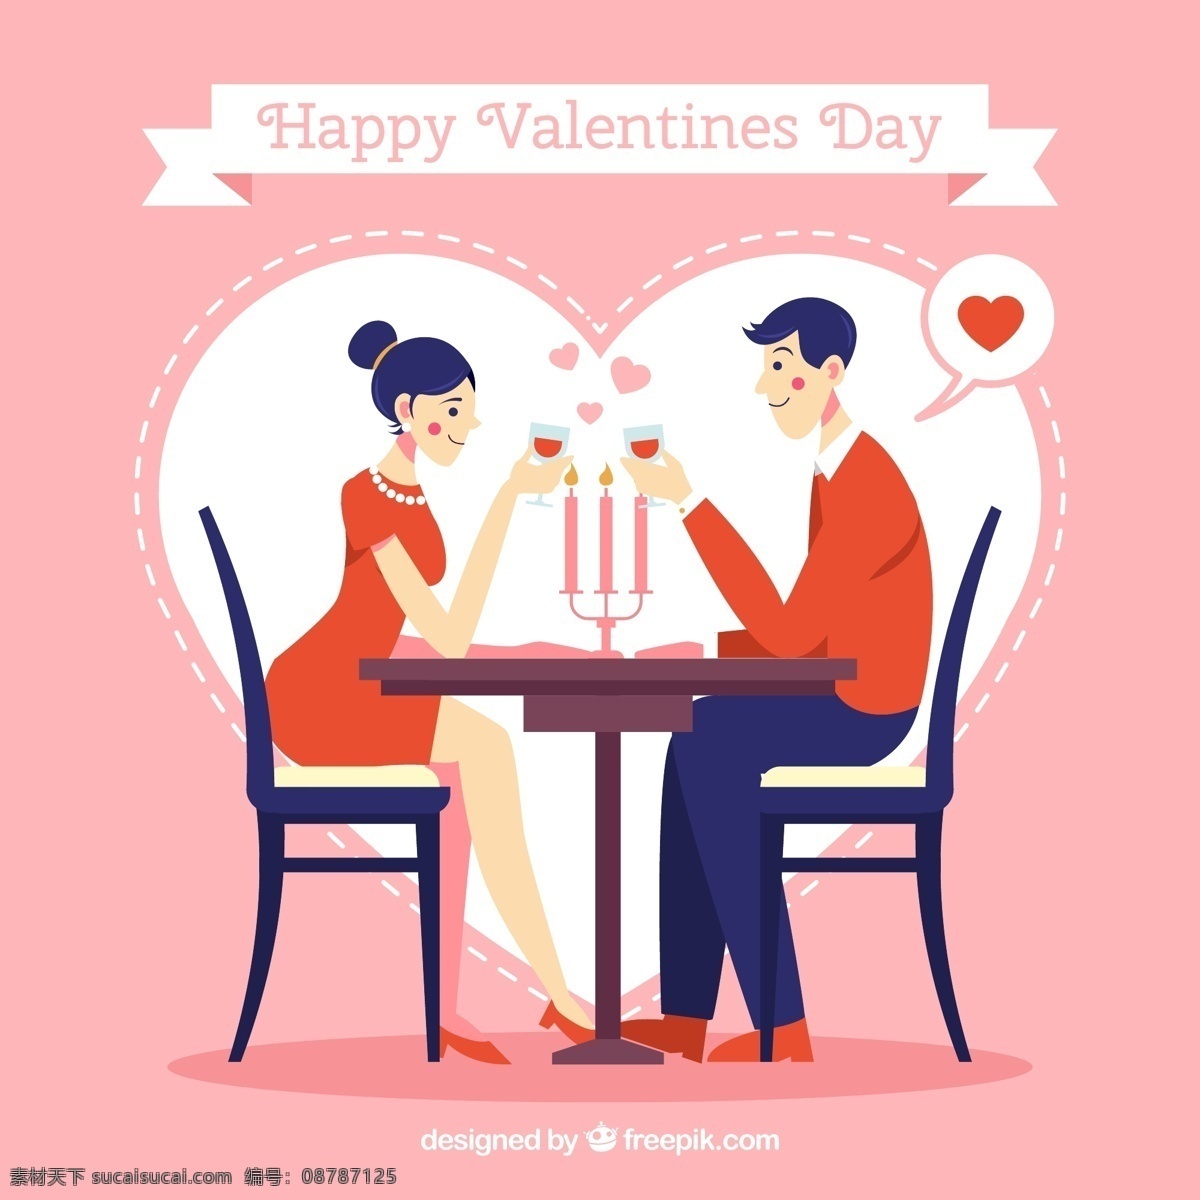 创意 情人节 餐厅 里 情侣 矢量图 餐桌 餐饮 爱心 男子 女子 happy valentines day 约会 文化艺术 节日庆祝